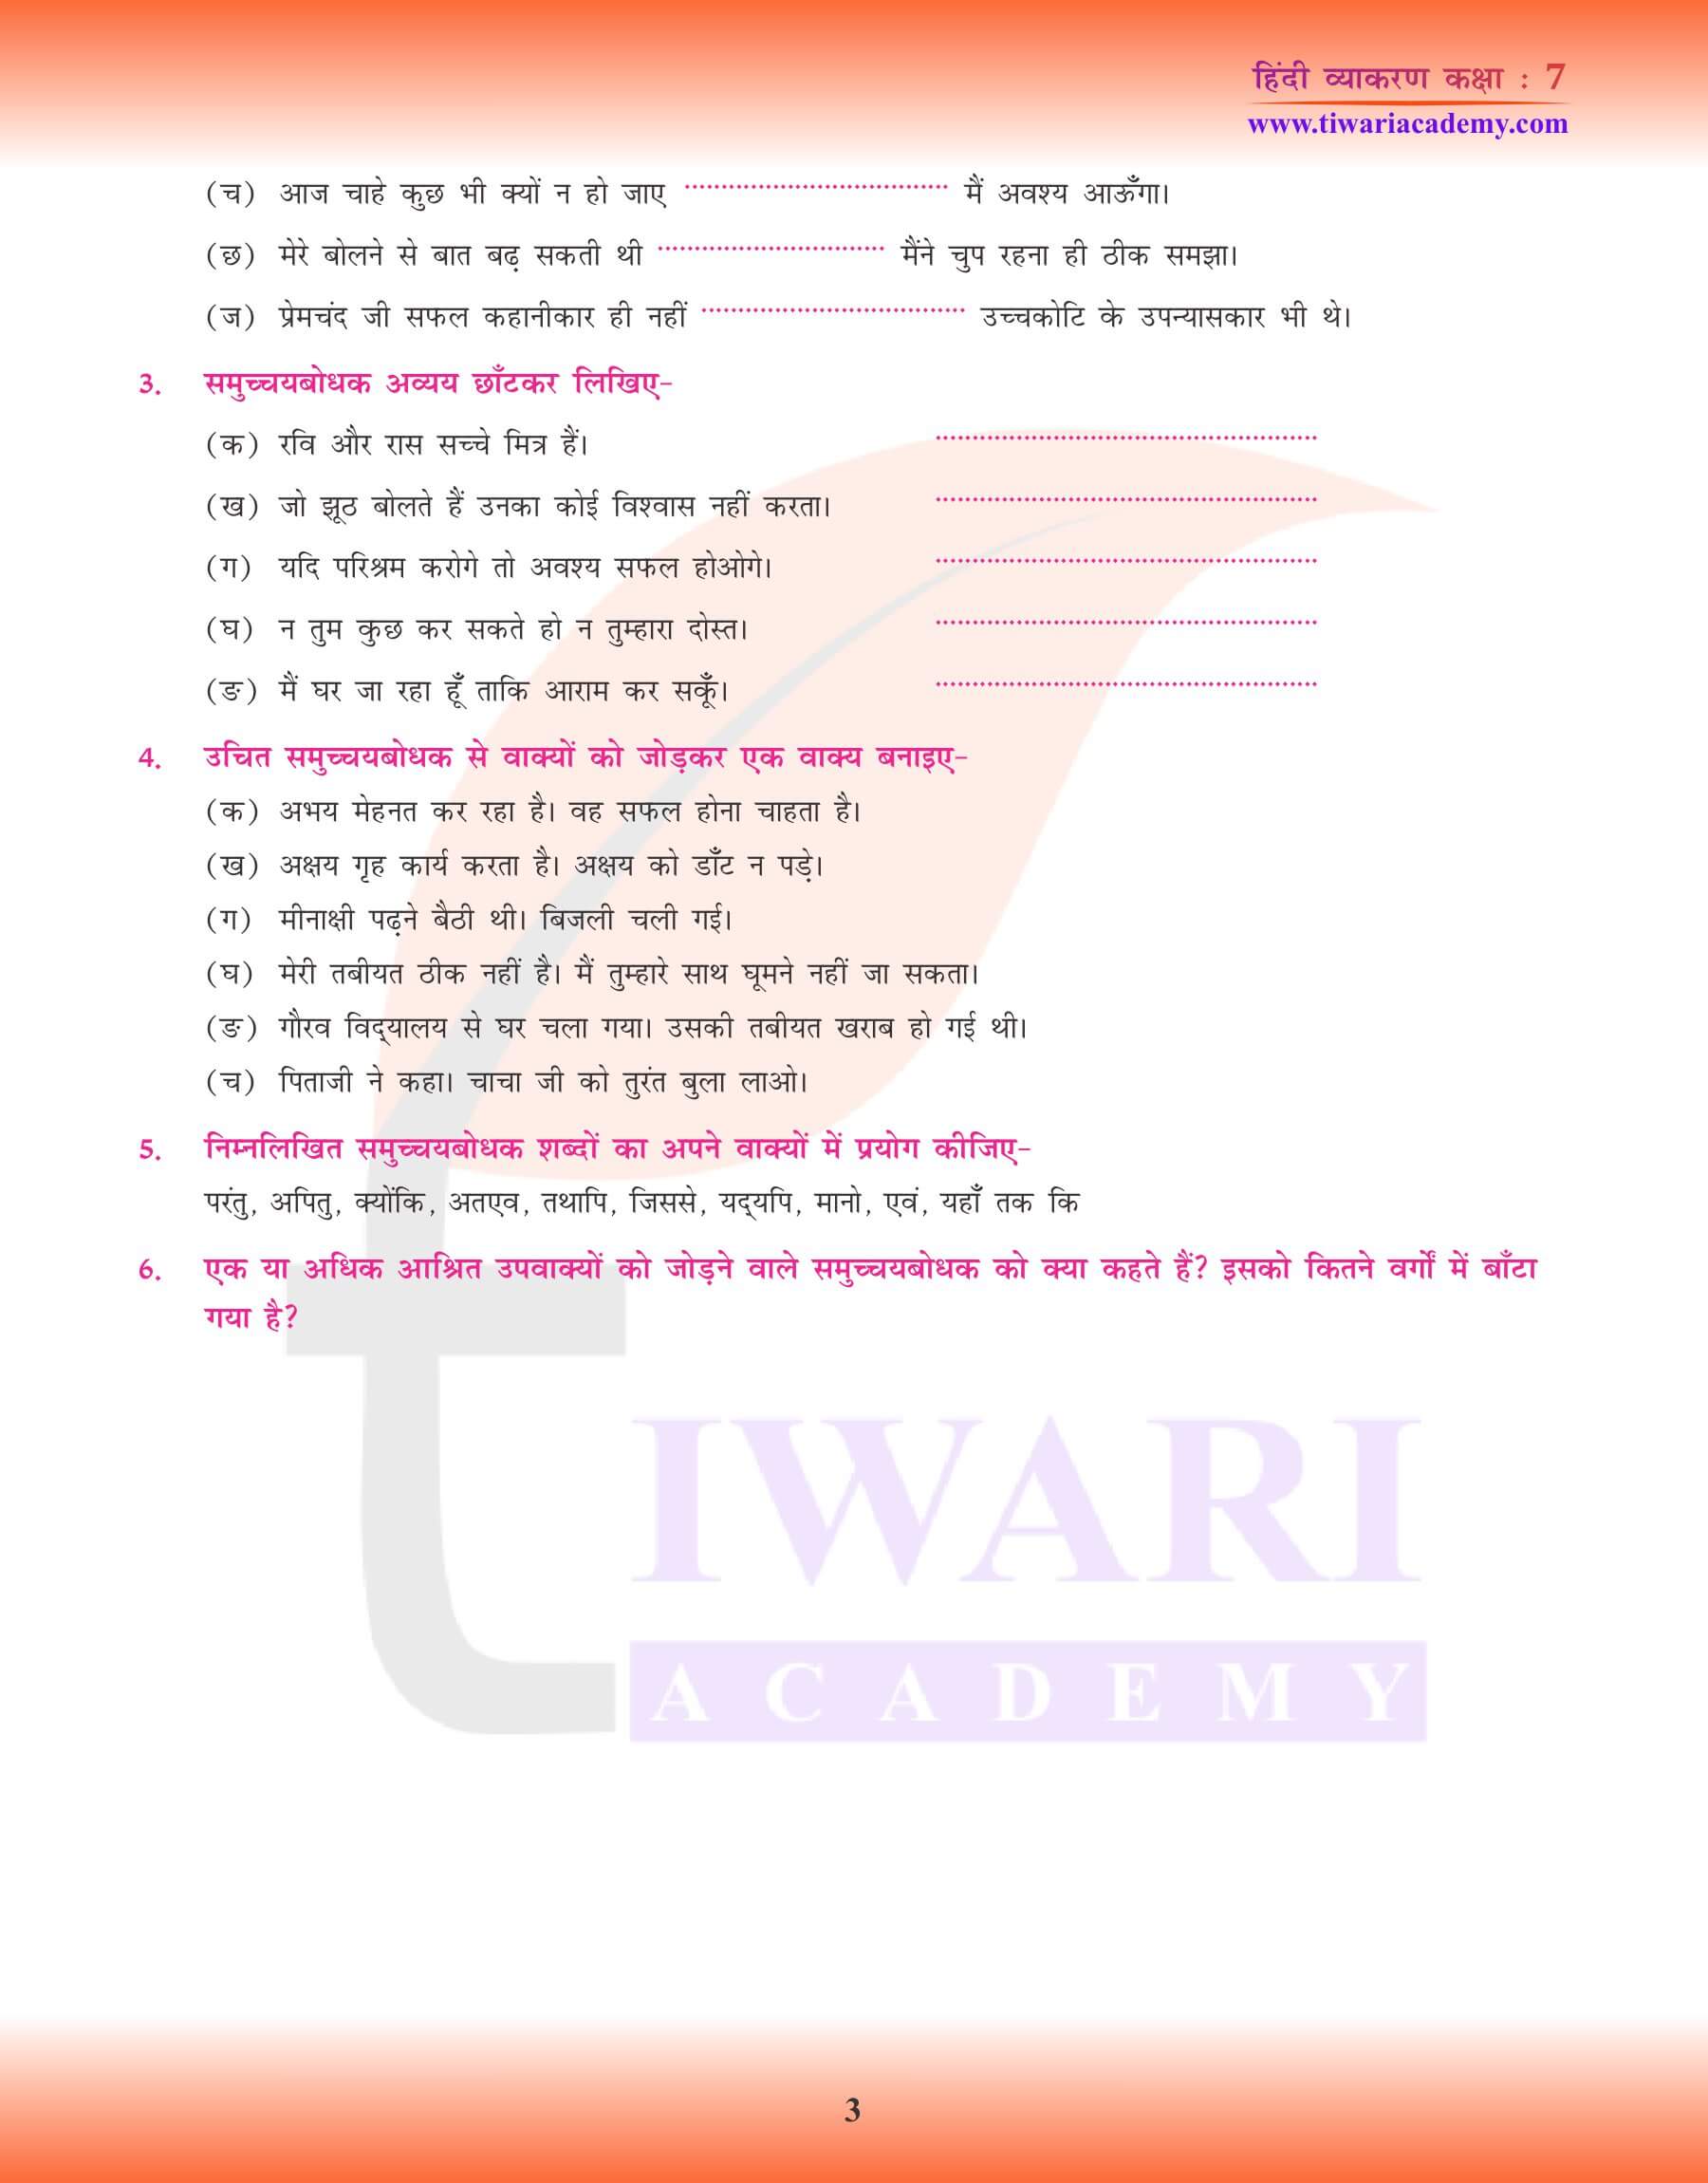 कक्षा 7 हिंदी व्याकरण में समुच्चयबोधक अव्यय